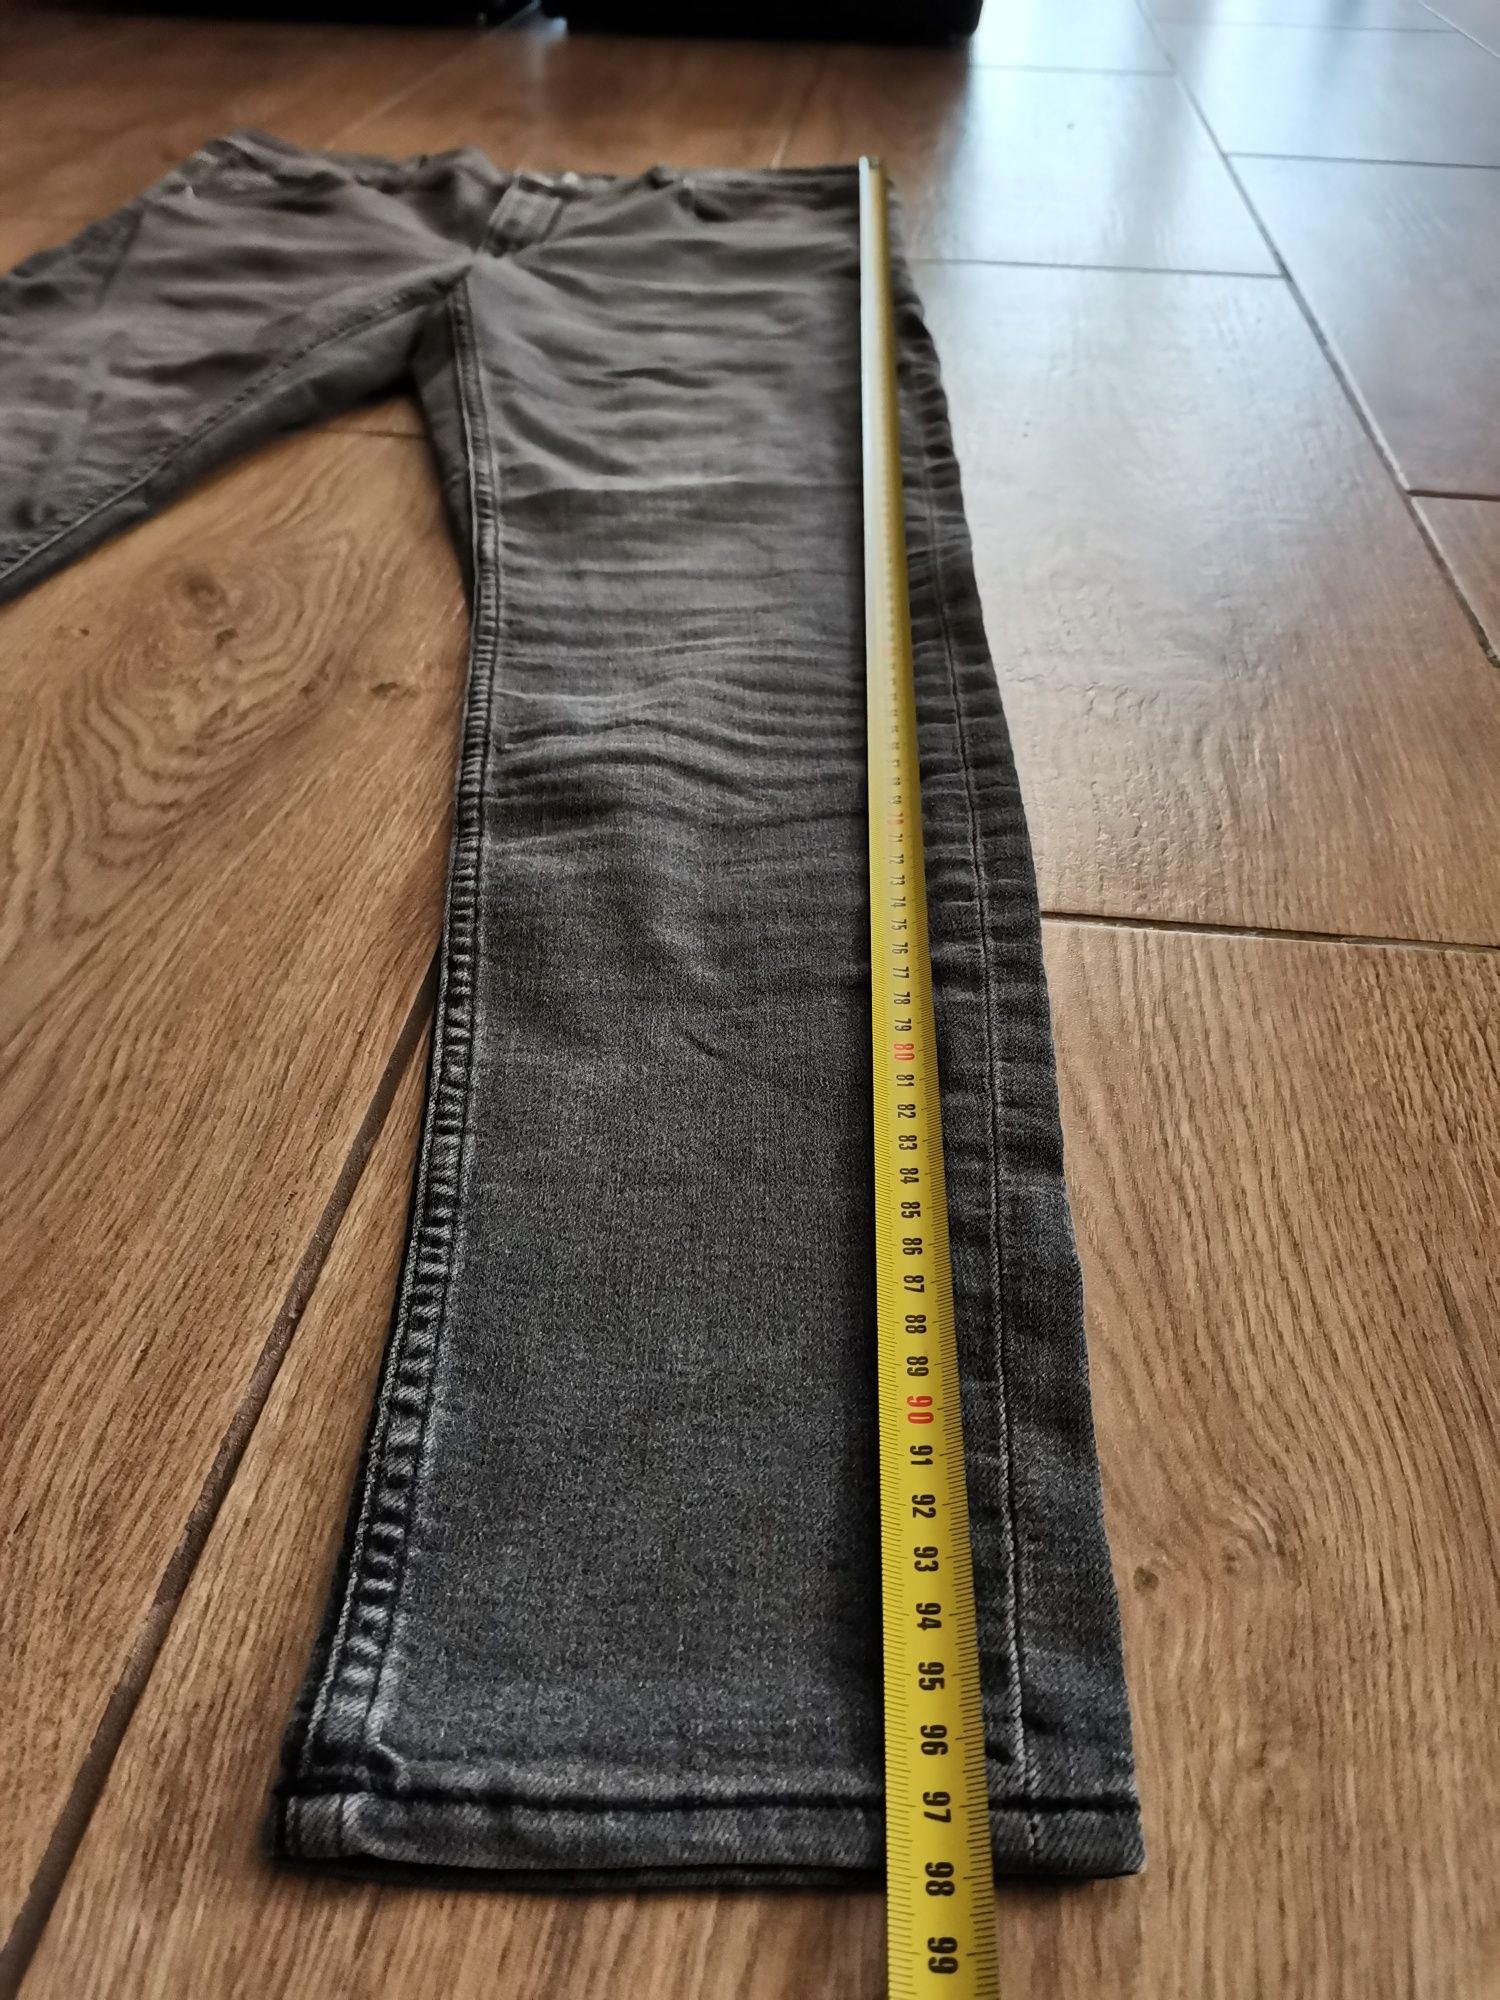 Spodnie dżinsy jeansy H&M skinny 44